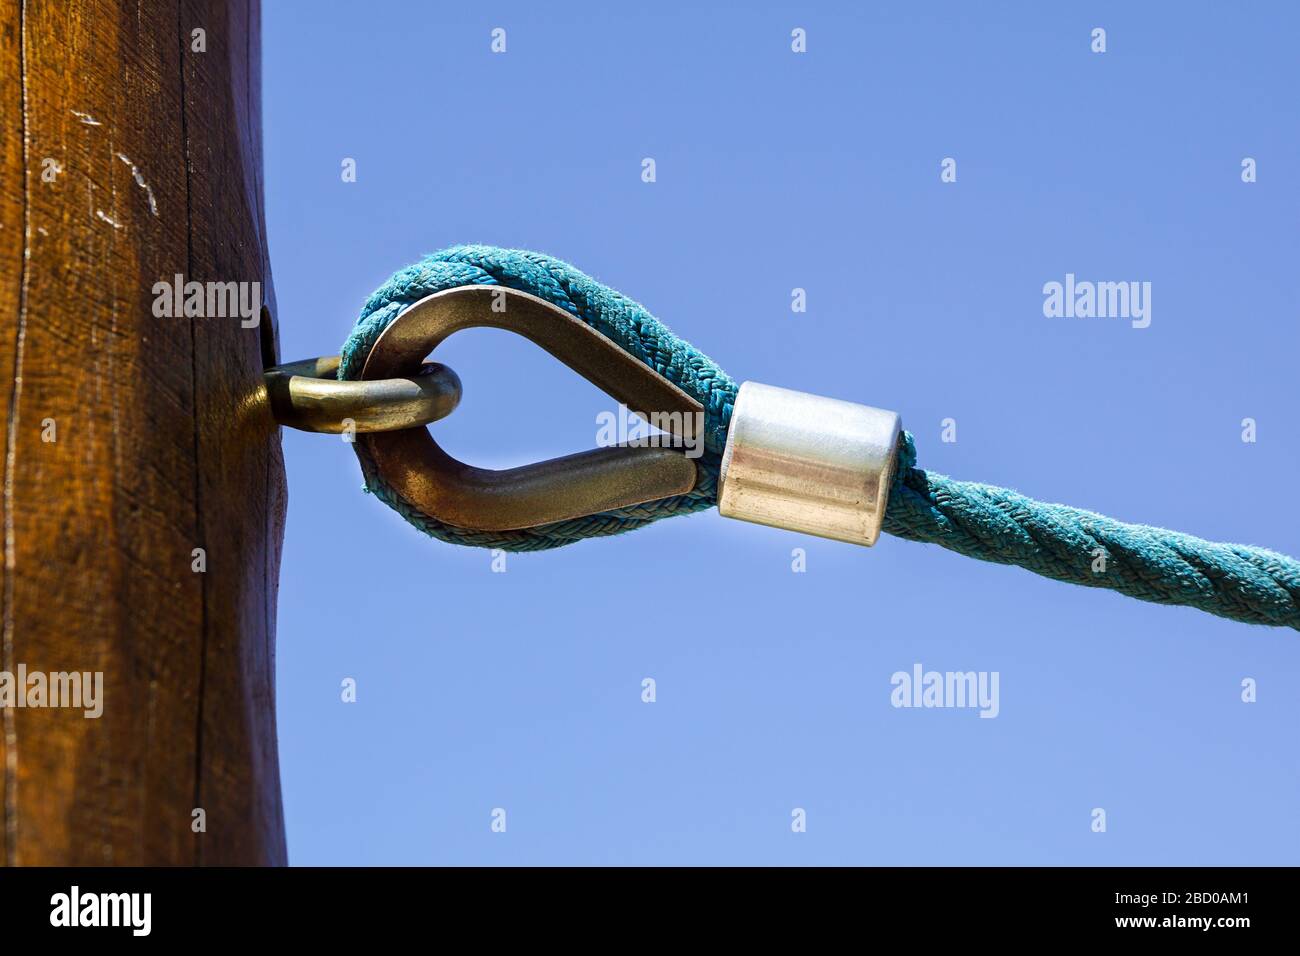 la manille rouillée relie l'élingue et le nœud attaché à la corde Banque D'Images